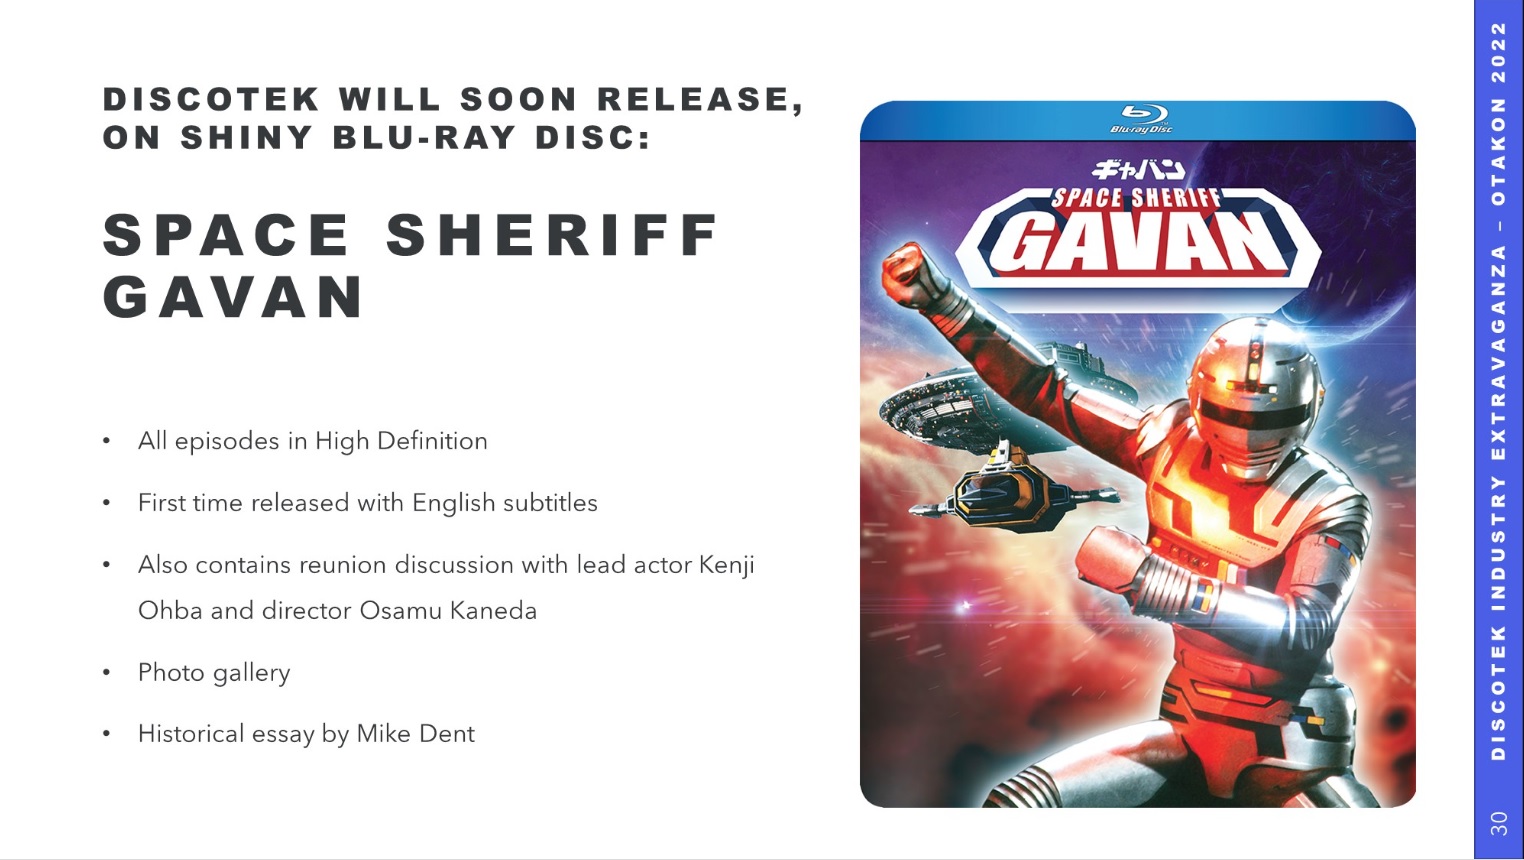 Discotek annonce la sortie en Blu ray de Space Sheriff Gavan